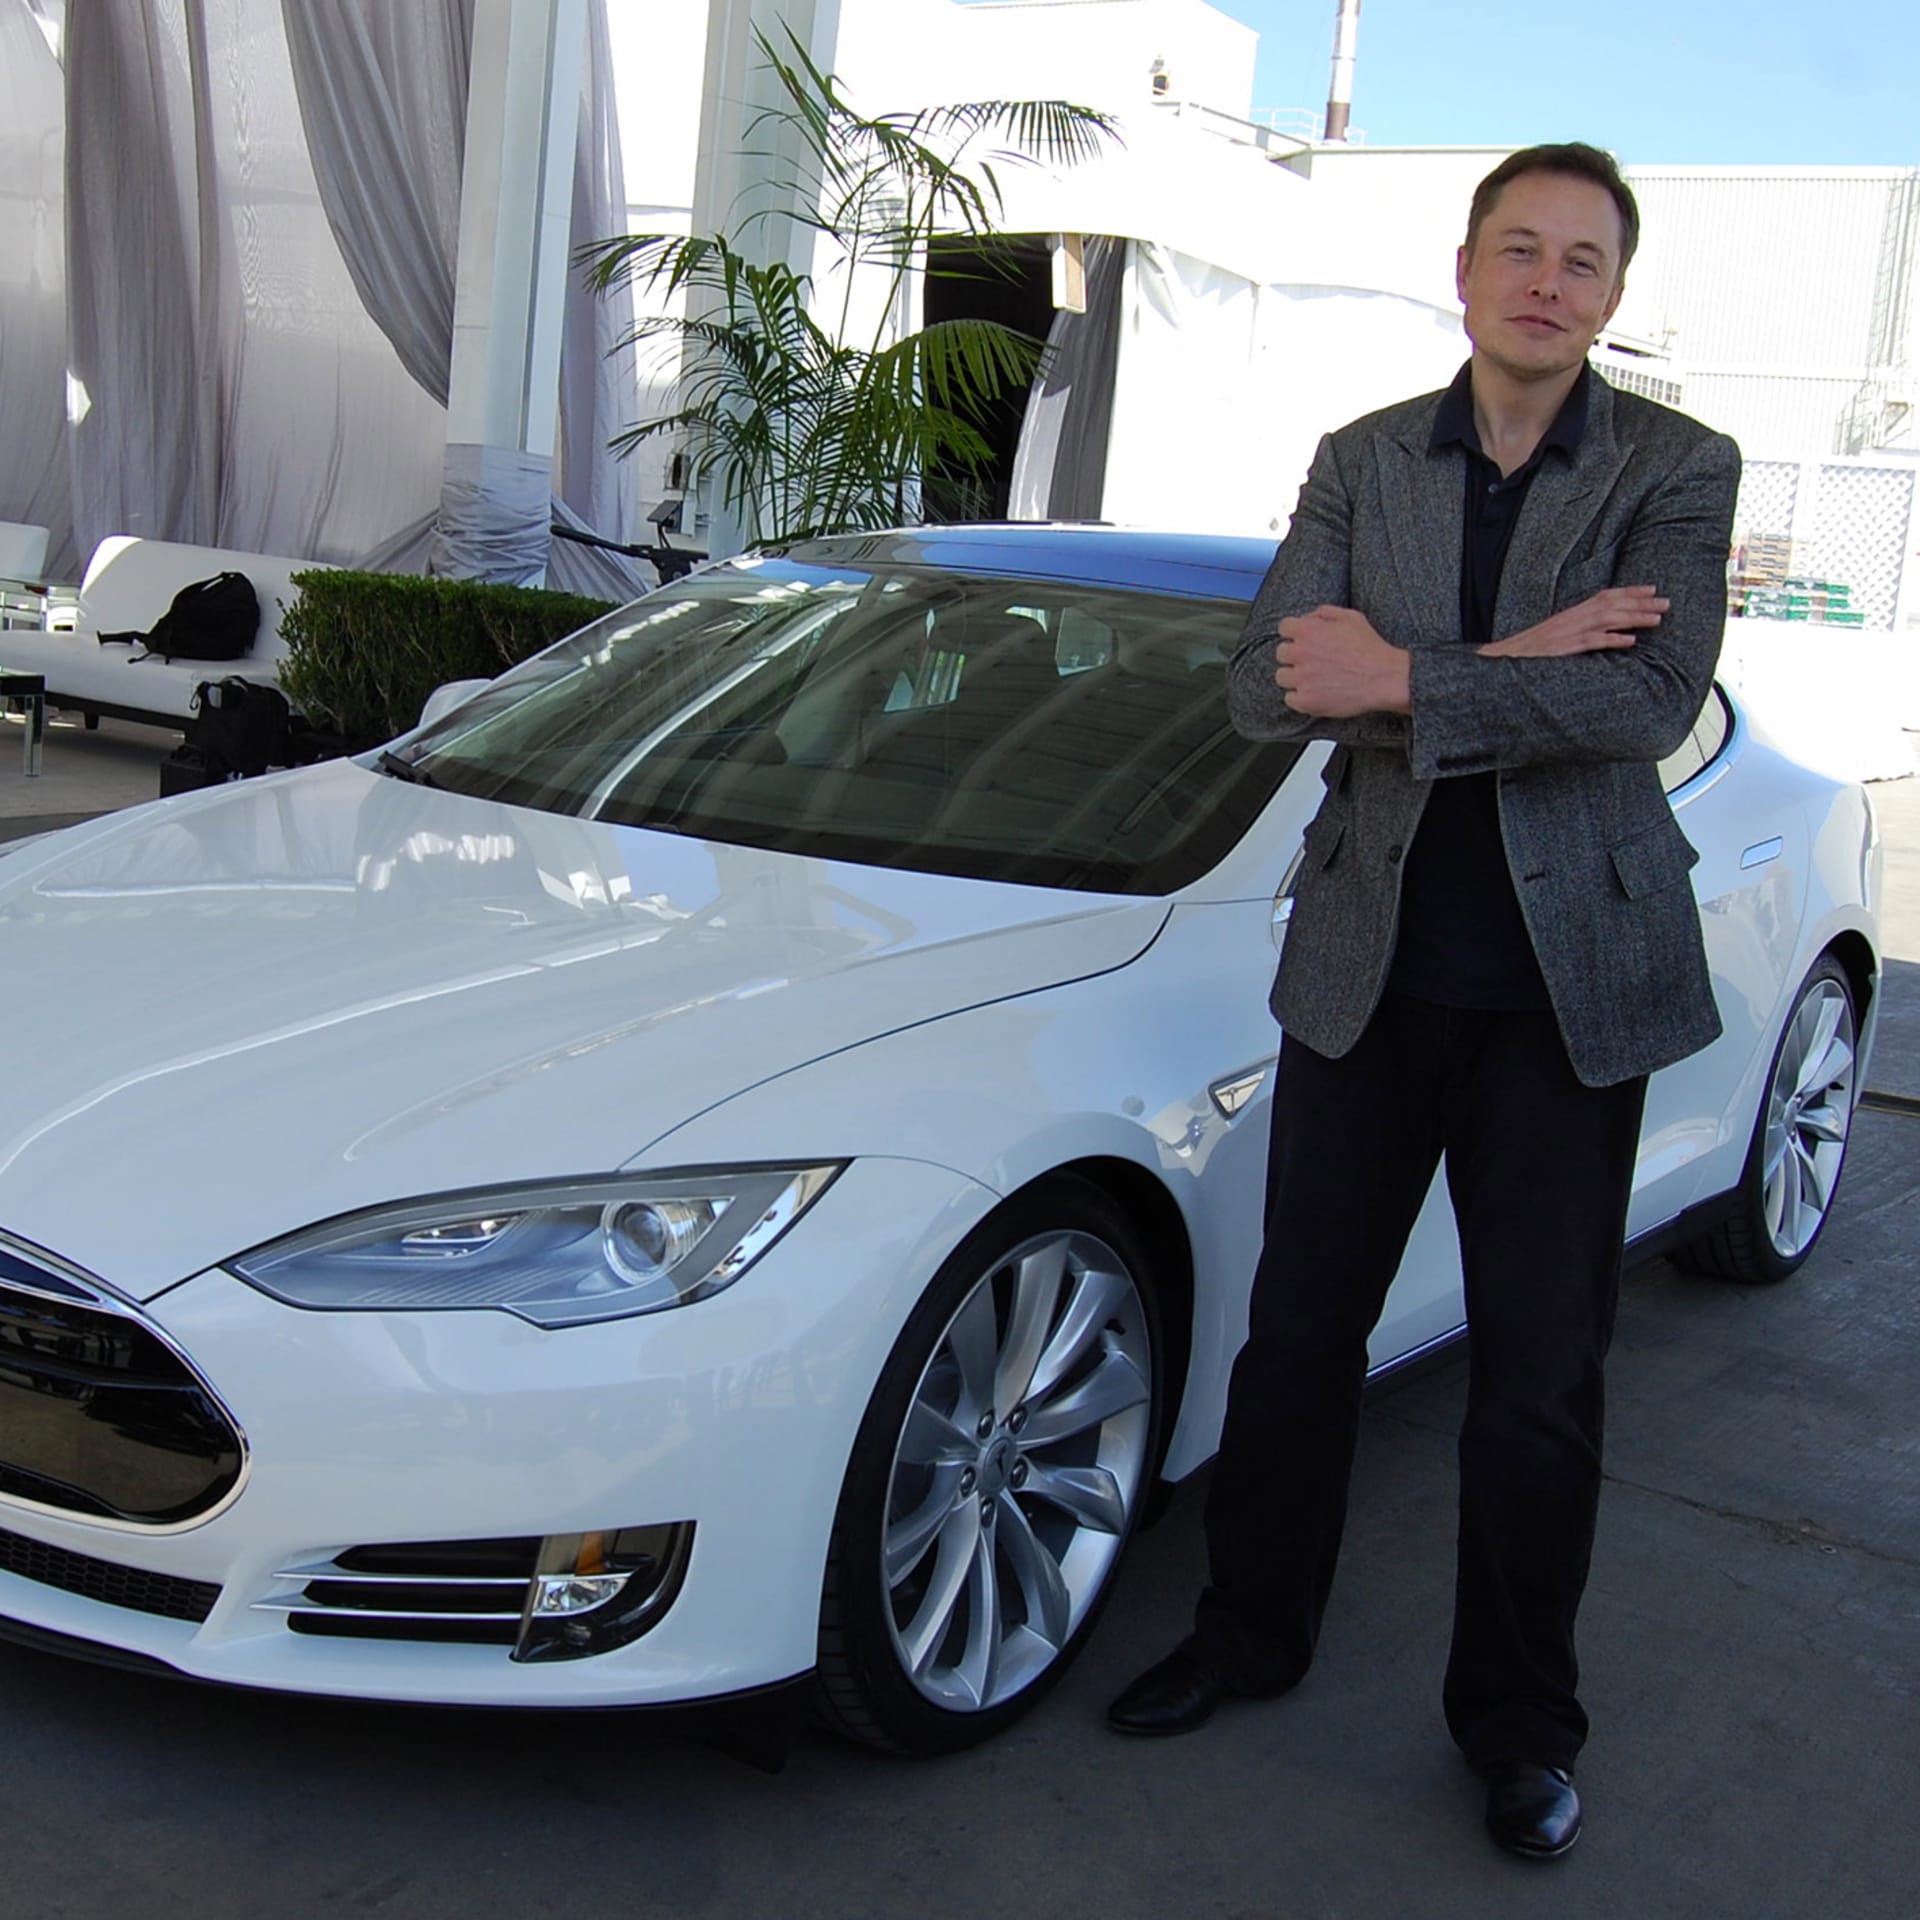 V roce 2003 vstoupil Elon Musk do elektroautomobilky Tesla, když svůj vstup podpořil částkou 6,5 milionu dolarů.